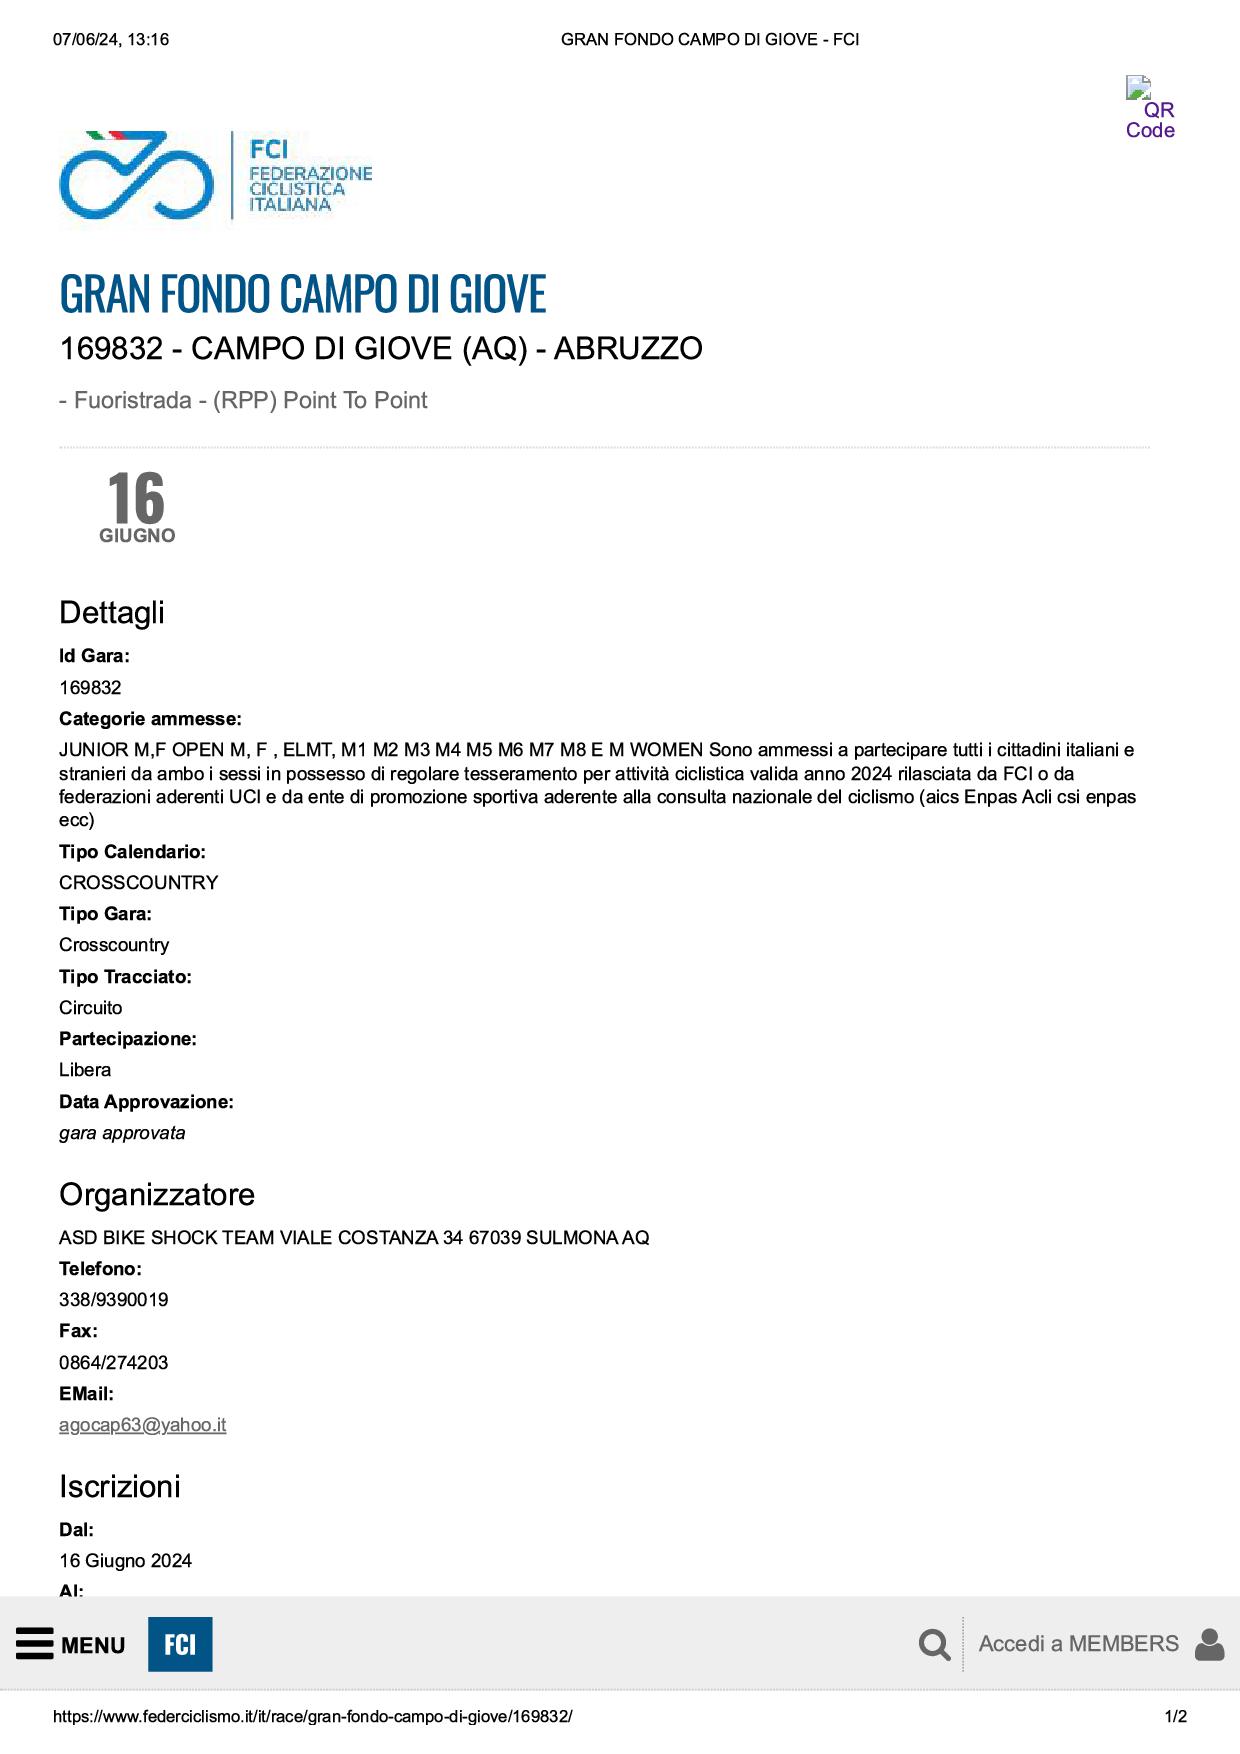 GRAN FONDO CAMPO DI GIOVE FCI1